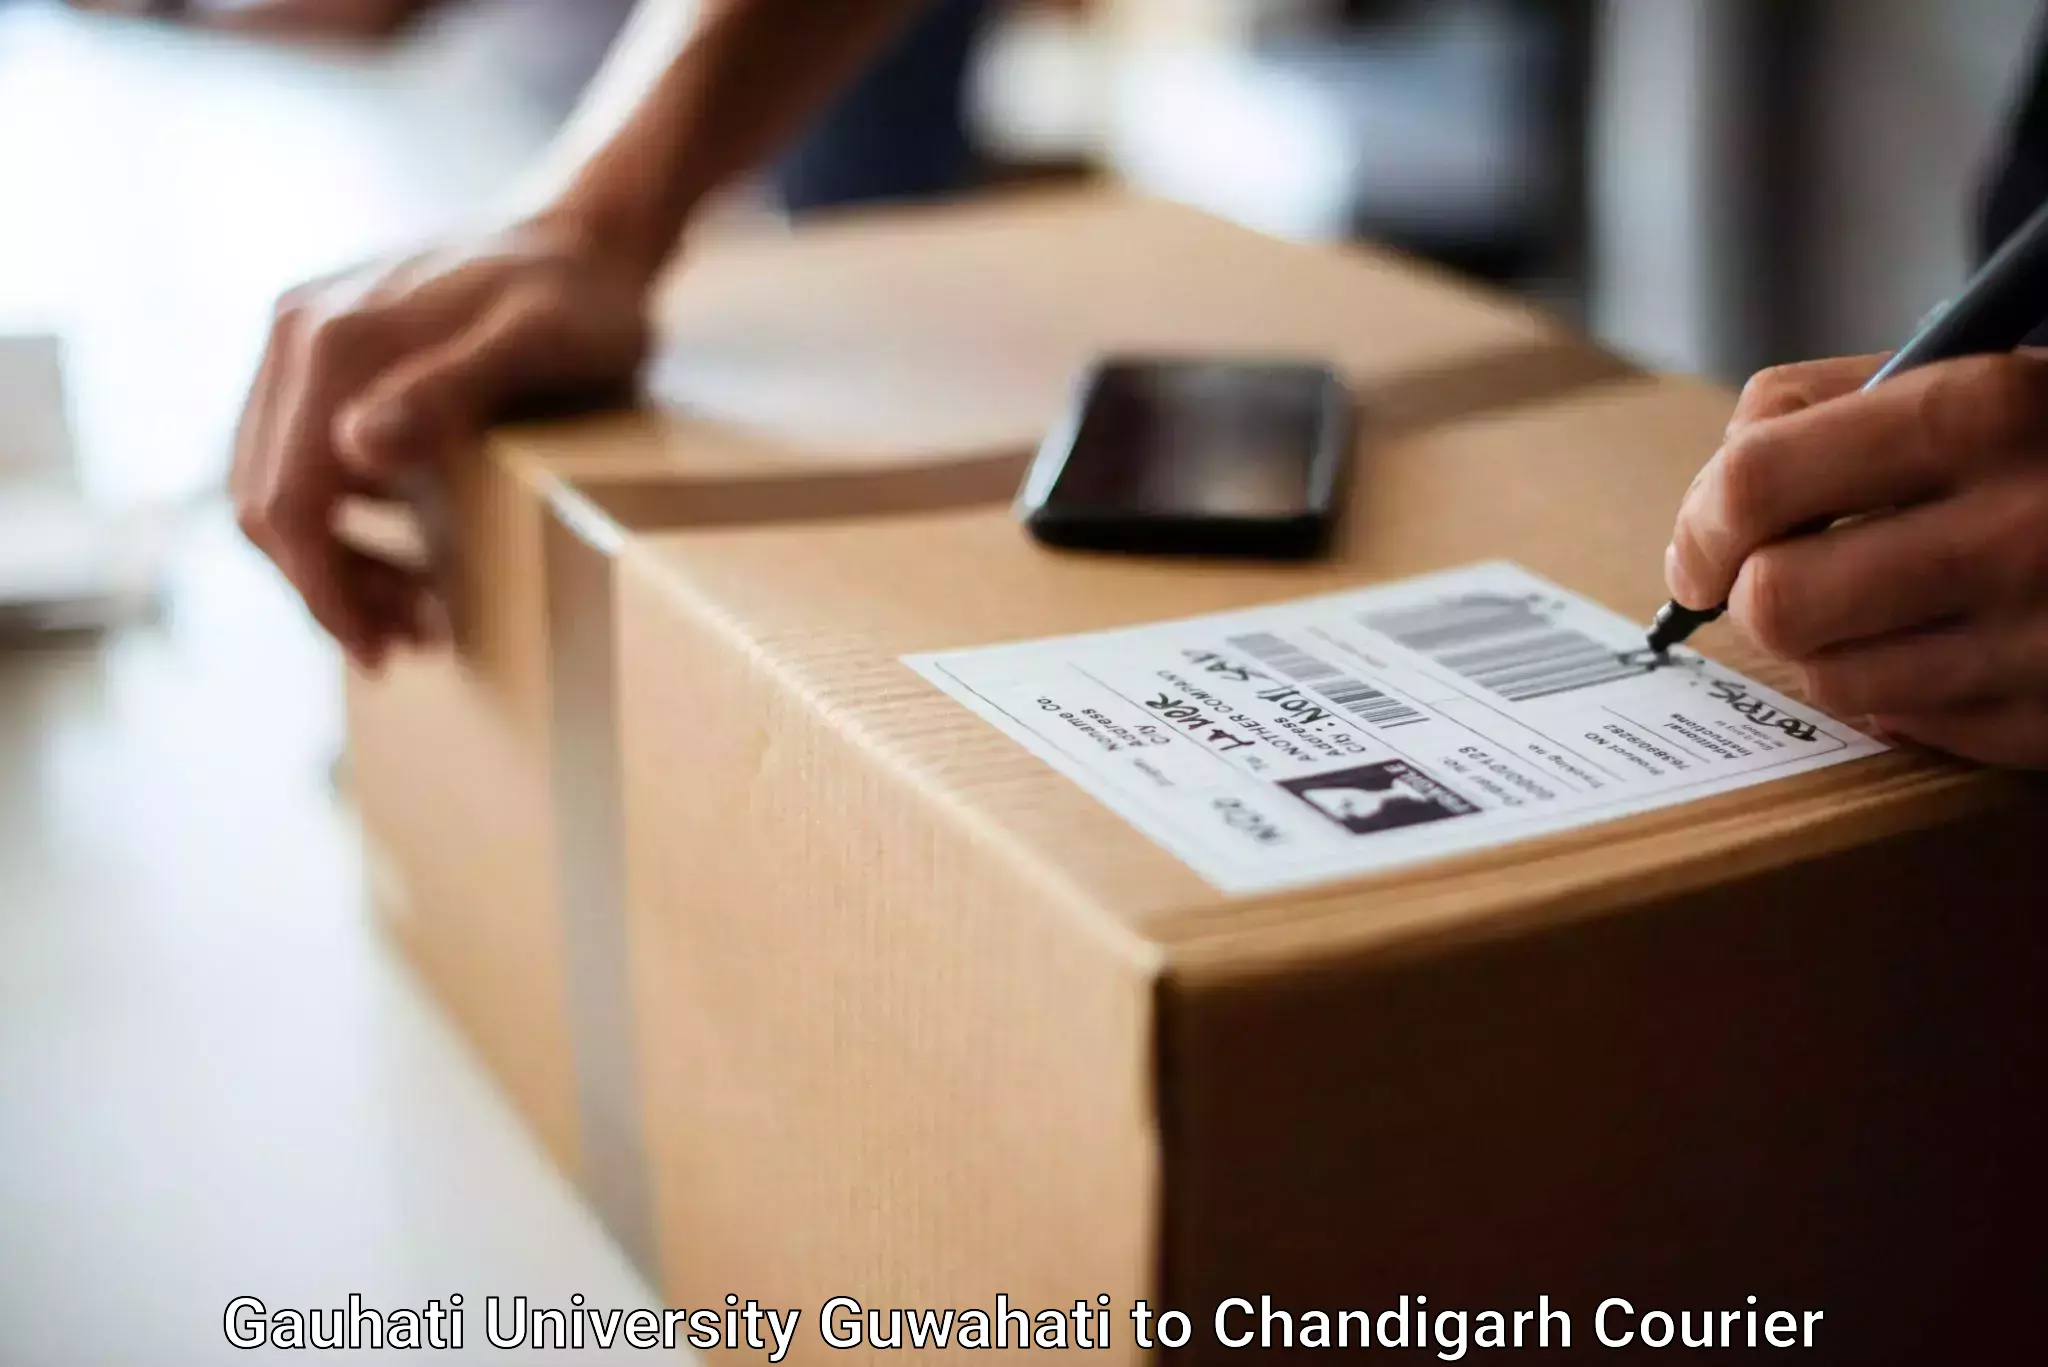 Baggage courier calculator Gauhati University Guwahati to Chandigarh